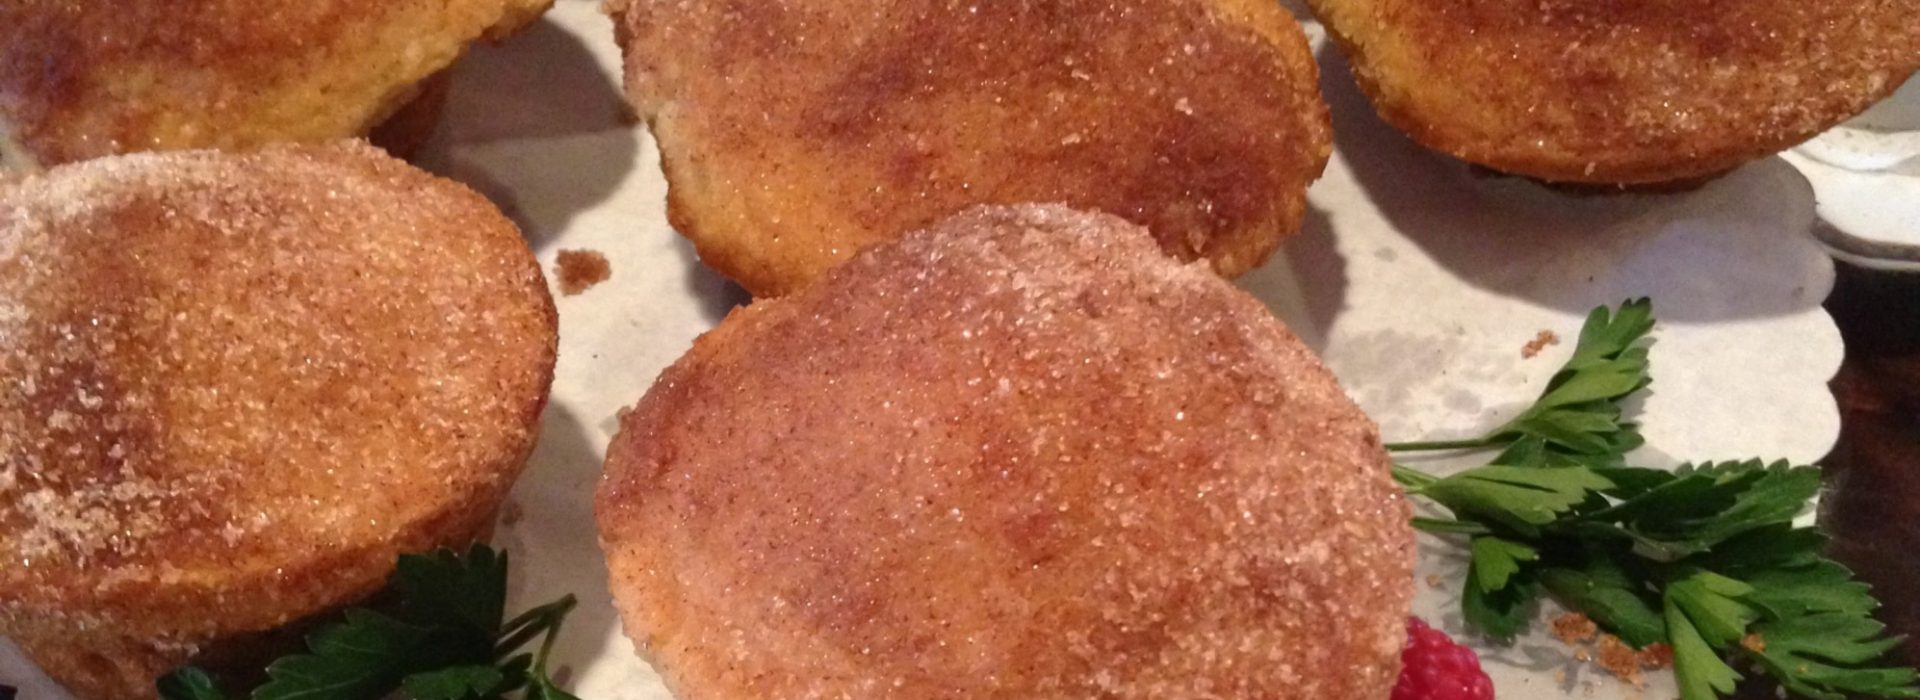 Rabbit Hill Inn Doughnut Muffin recipe|donut muffin on Rabbit Hill Inn breakfast buffet